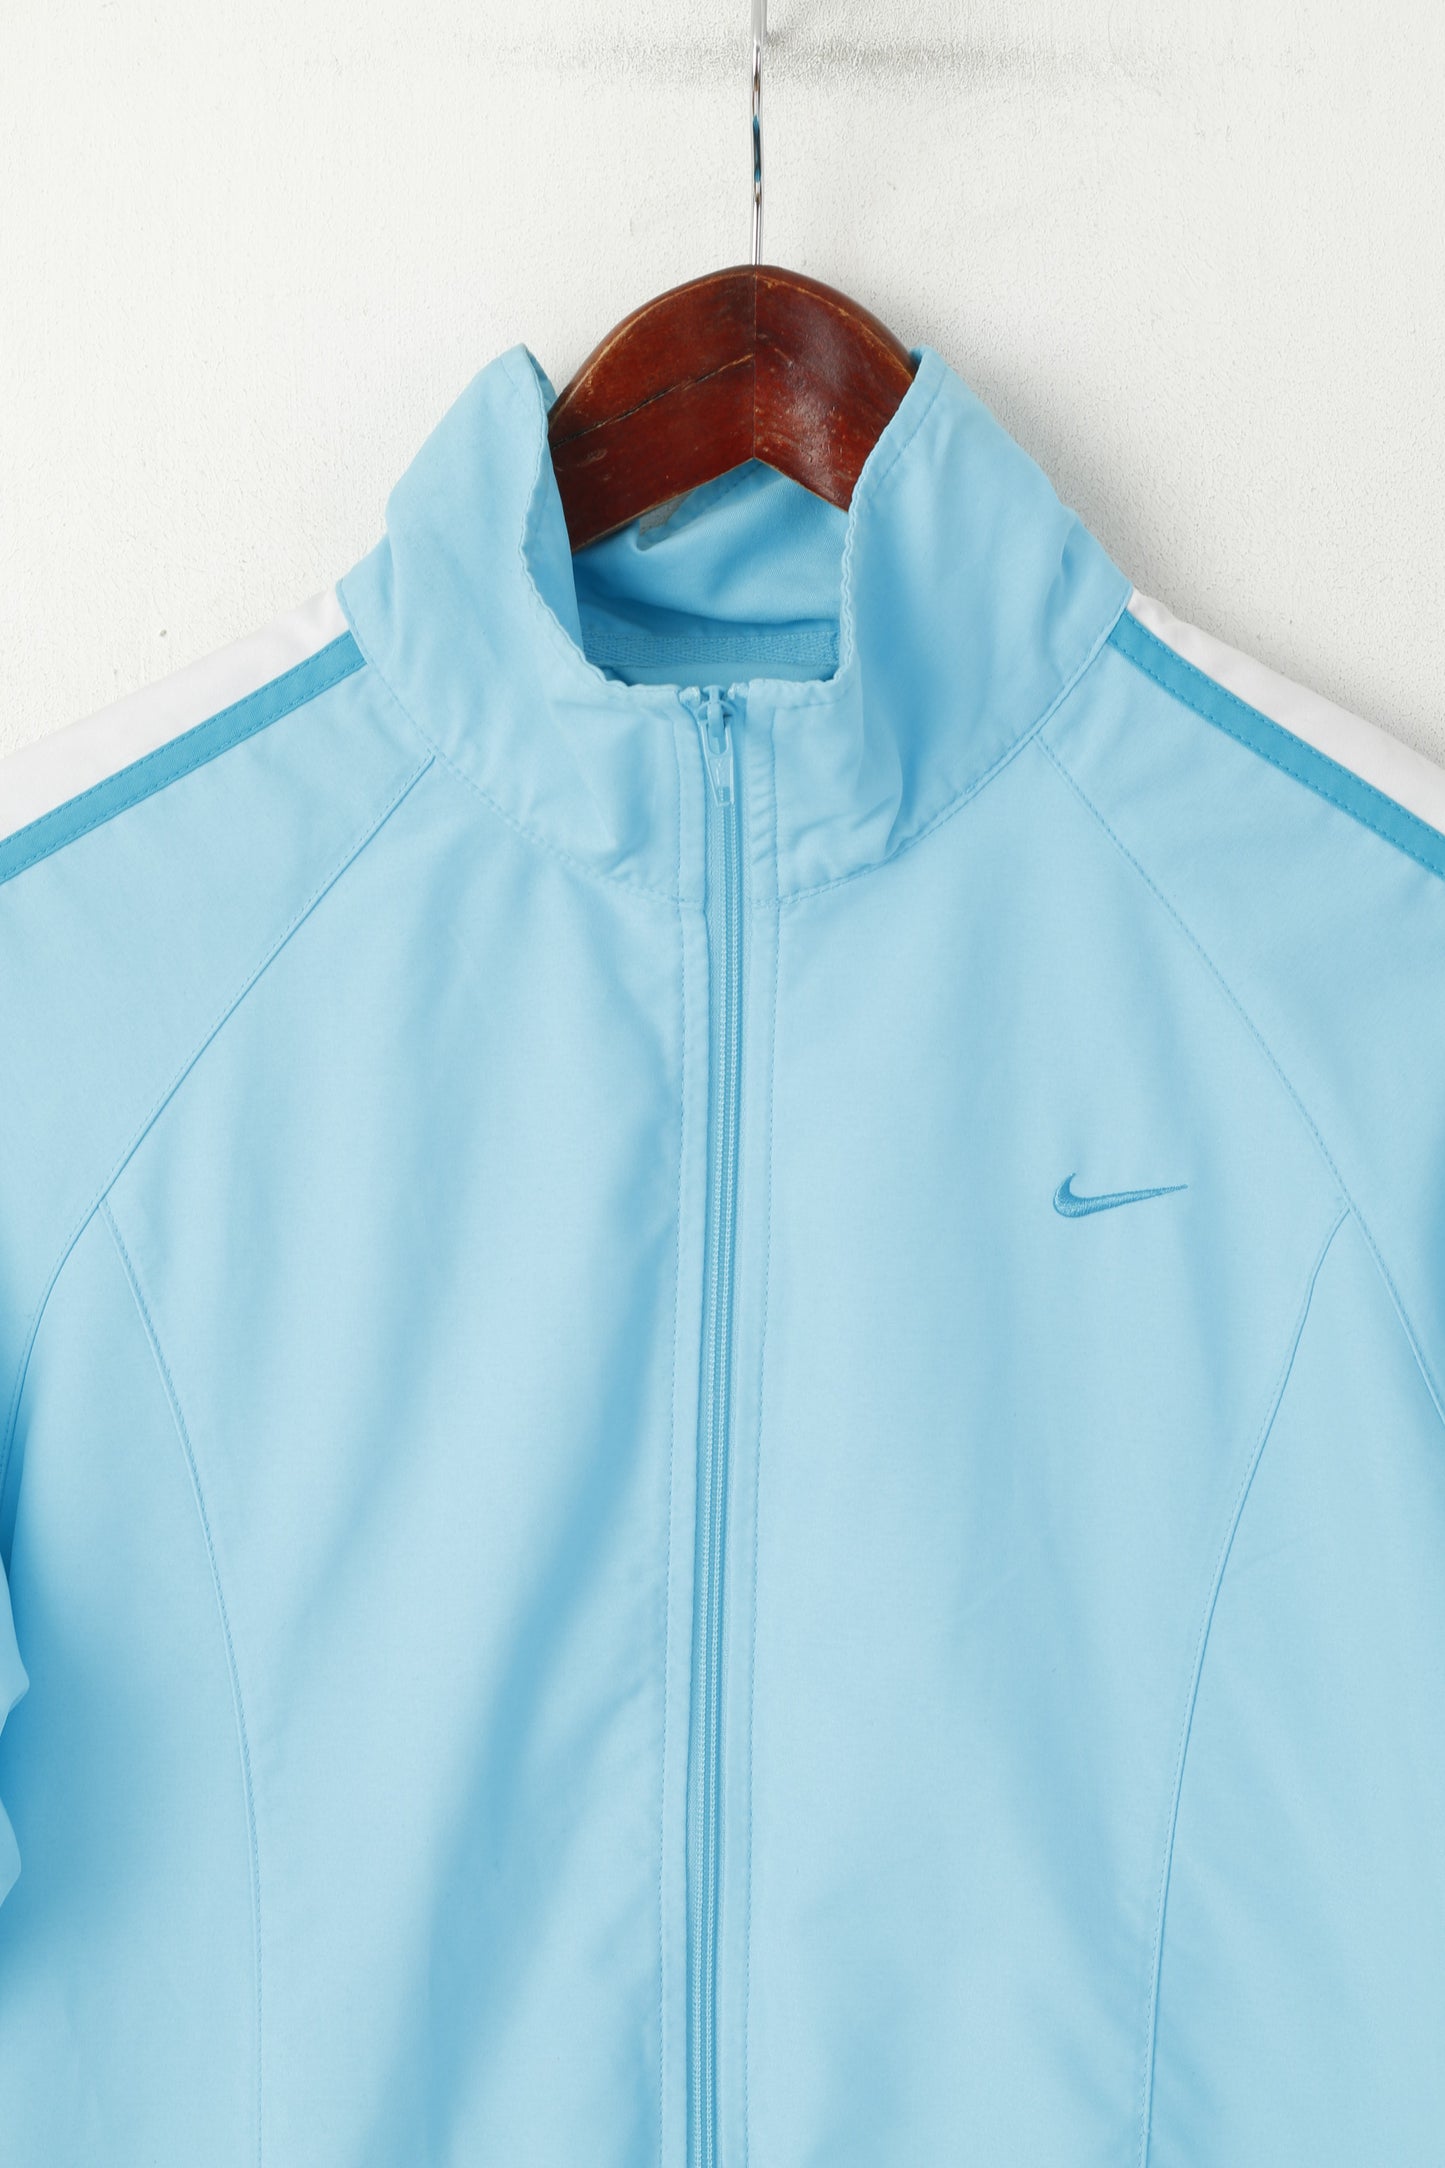 Giacca Nike S da donna, blu, leggera, con cerniera intera, tuta sportiva da allenamento